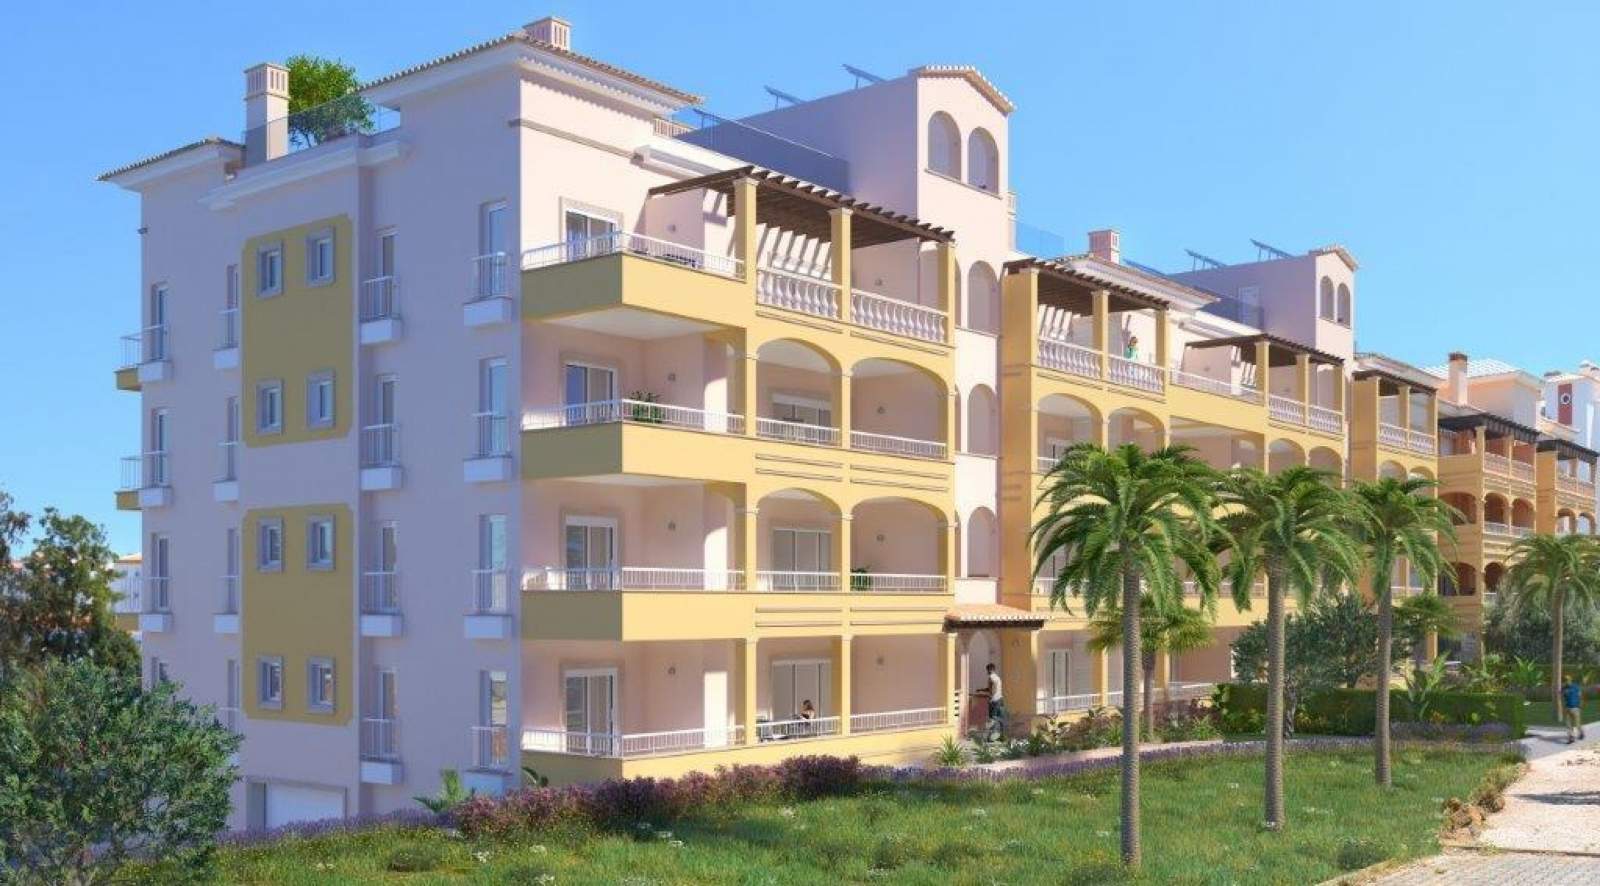 Venta de apartamento en construcción, terraza, Lagos, Algarve, Portugal_141600